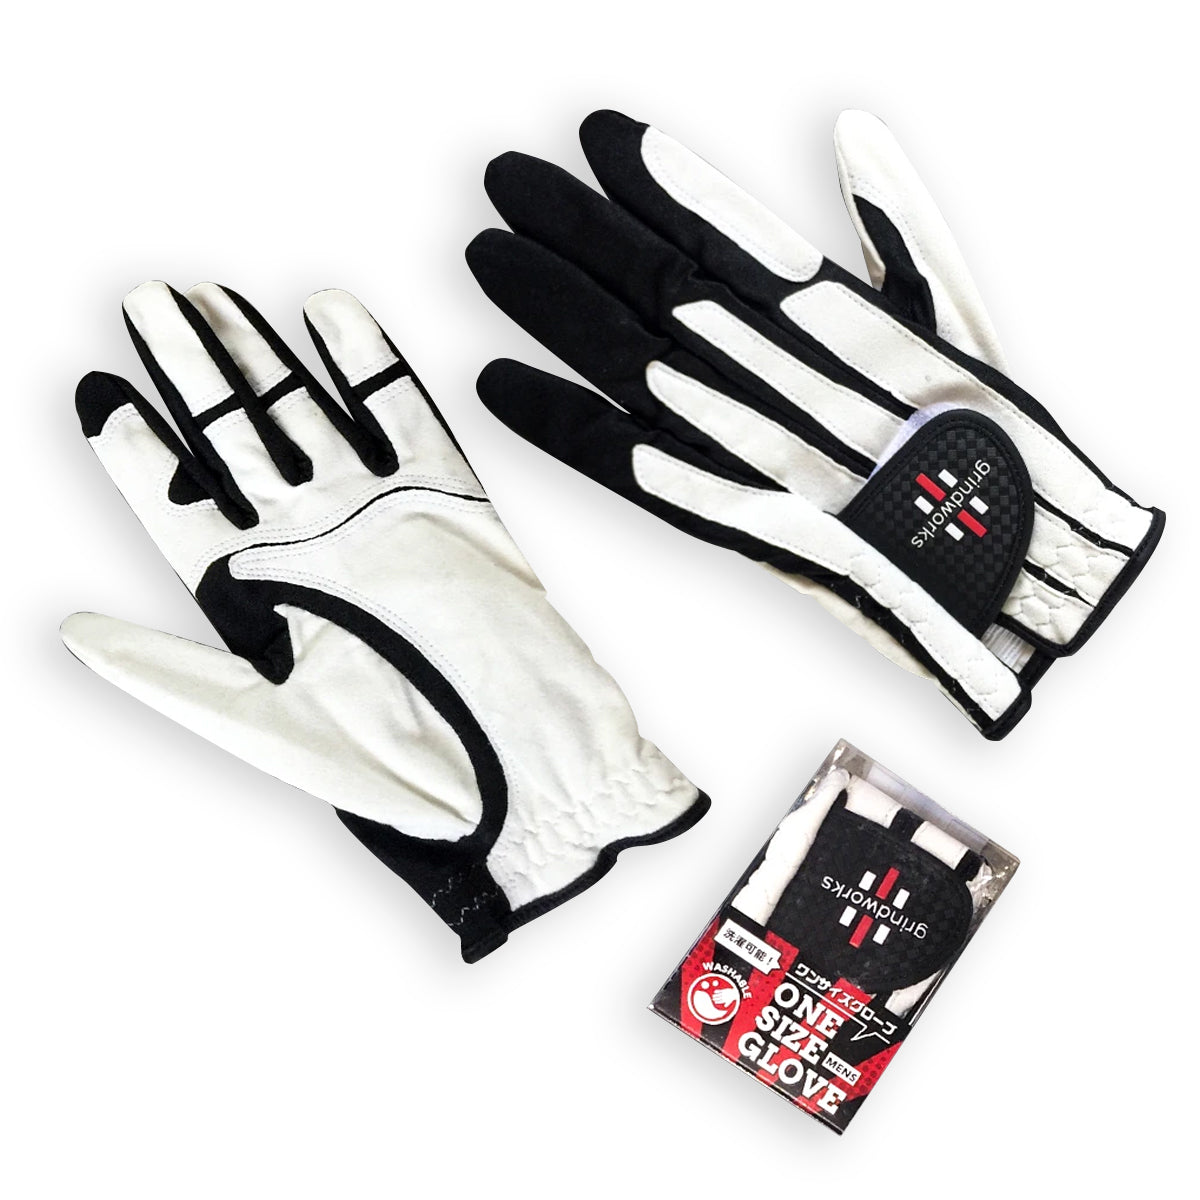 Grindworks One-Size Golf Glove